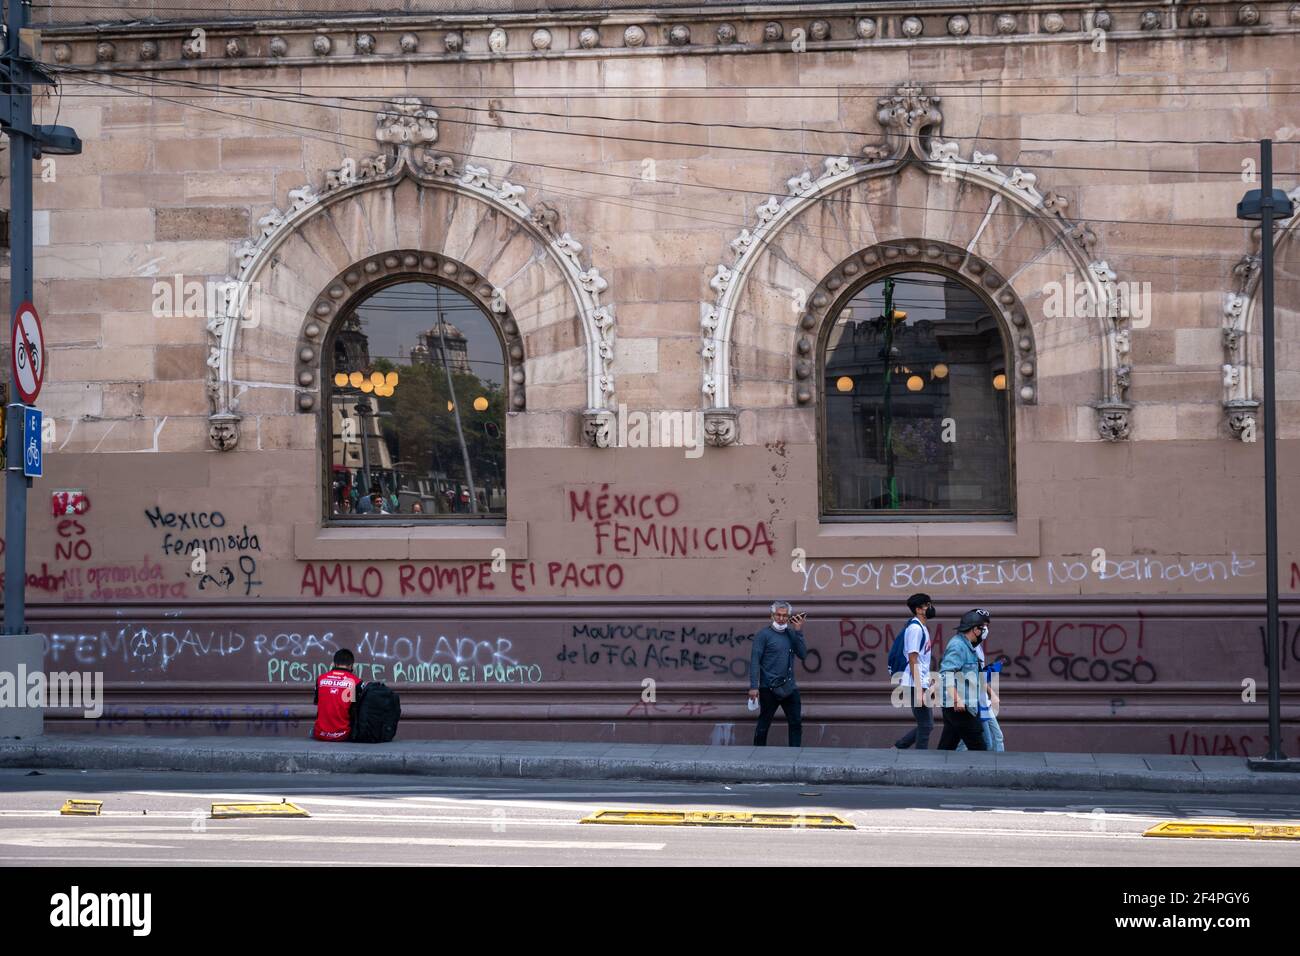 México, Ciudad de México, 13 de marzo de 2021, en la calle 'eje central, Lázaro Cárdenas' se muestran las paredes pintadas por la marcha para el día de la Mujer. Foto de stock